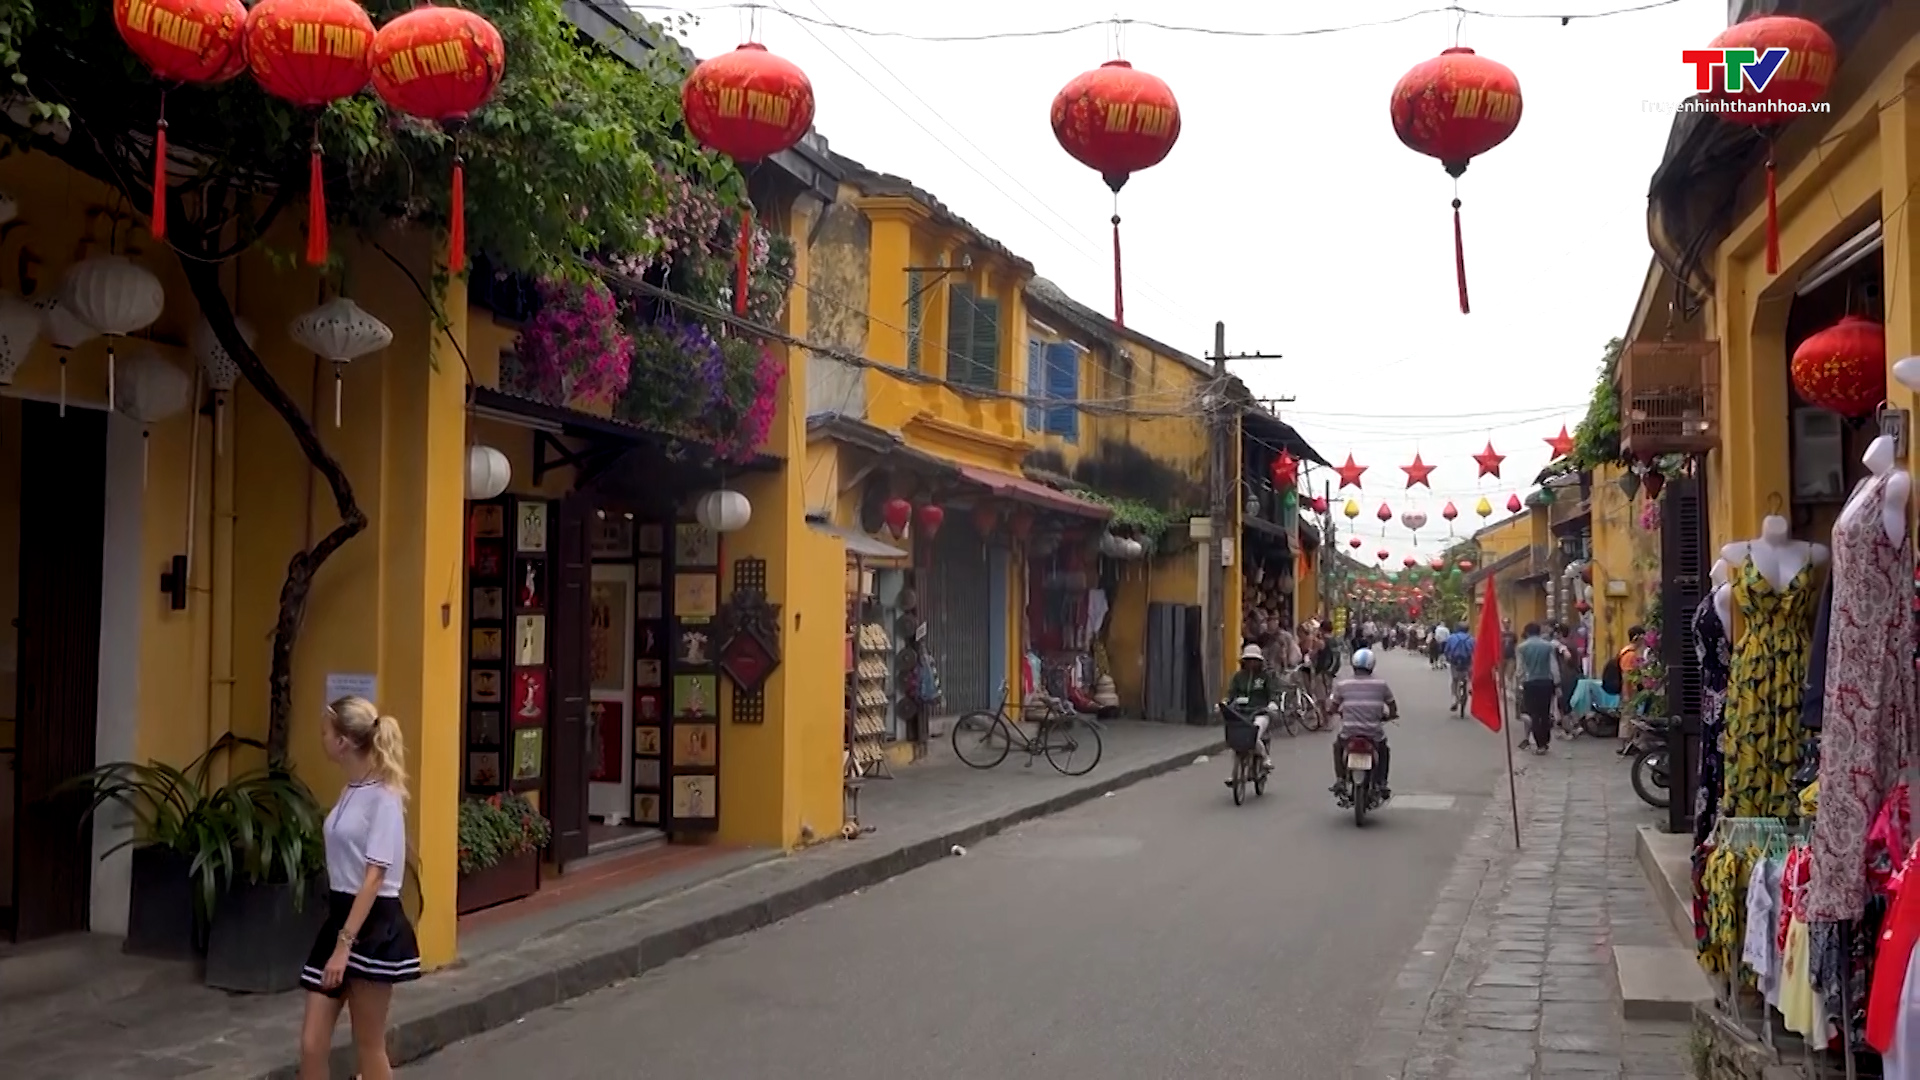 Thành phố Hồ Chí Minh, Hội An lọt danh sách điểm đến được yêu thích châu Á - Ảnh 2.